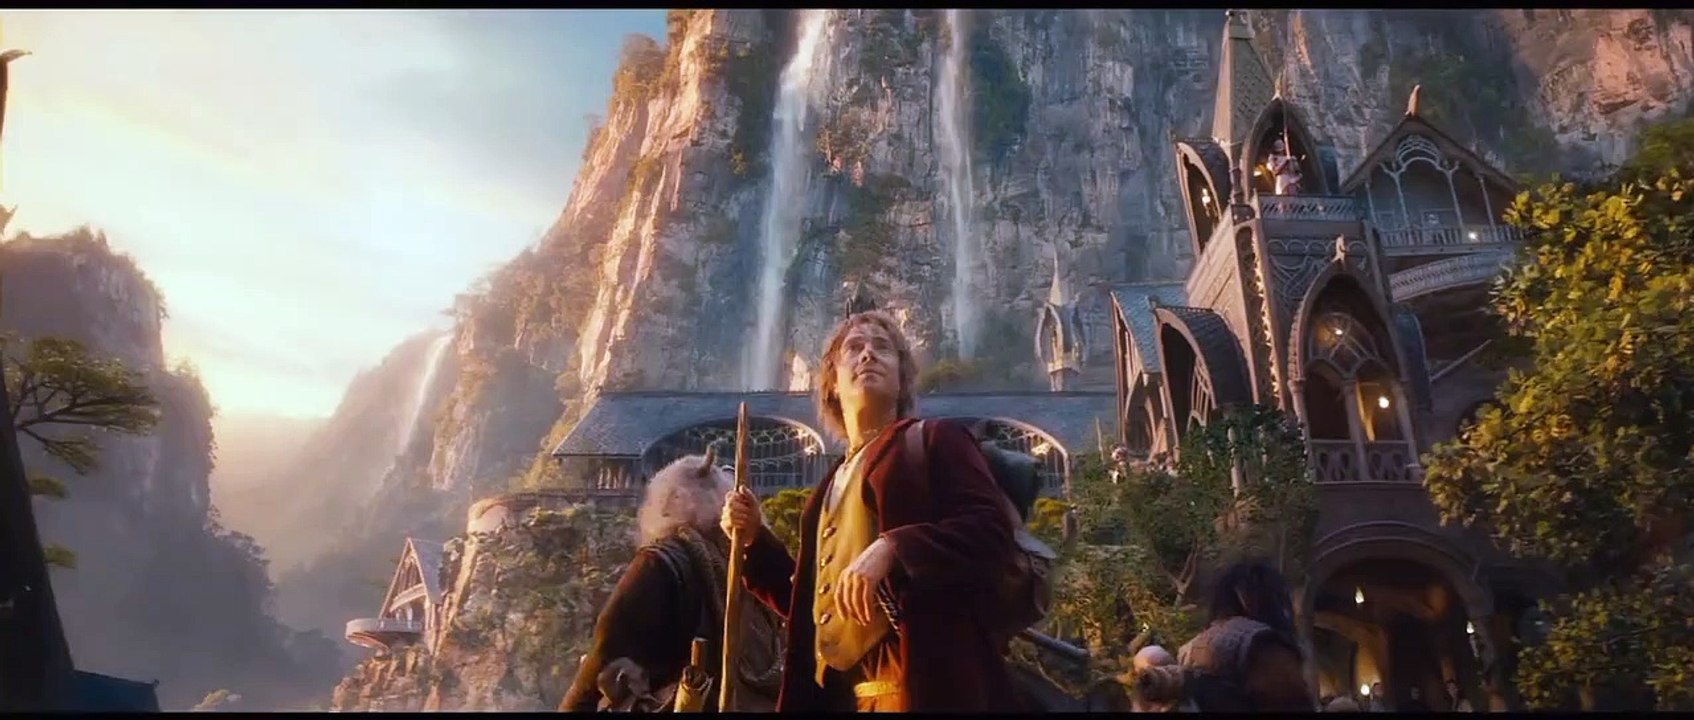 Der Herr der Ringe Der Hobbit 4K UHD Boxen Trailer DF